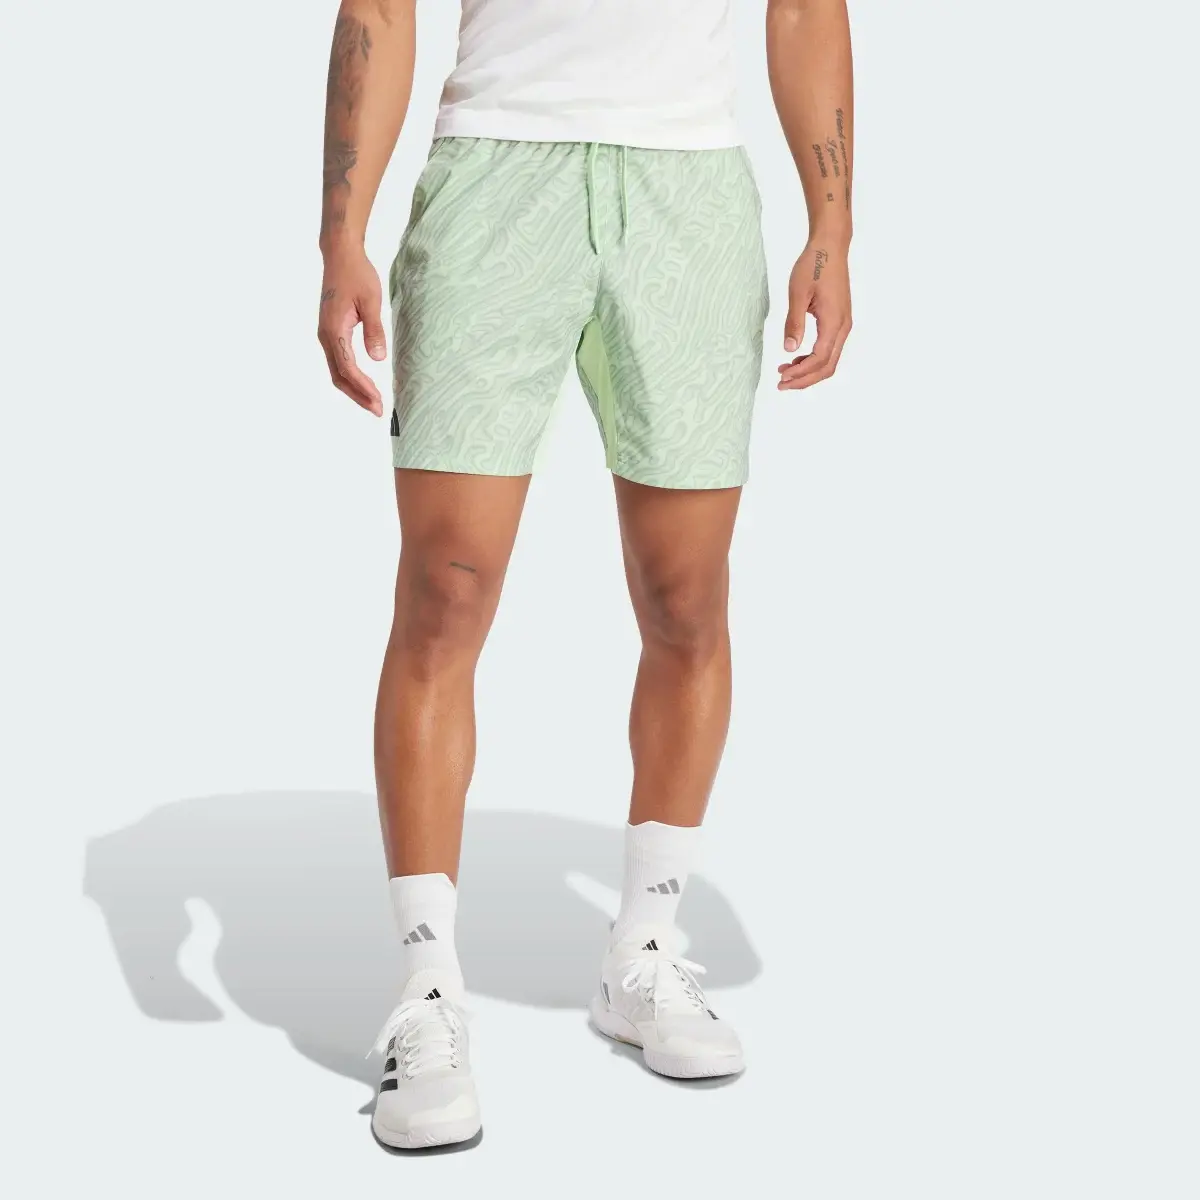 Adidas Short de tennis ergonomique imprimé HEAT.RDY Pro 17,8 cm. 1